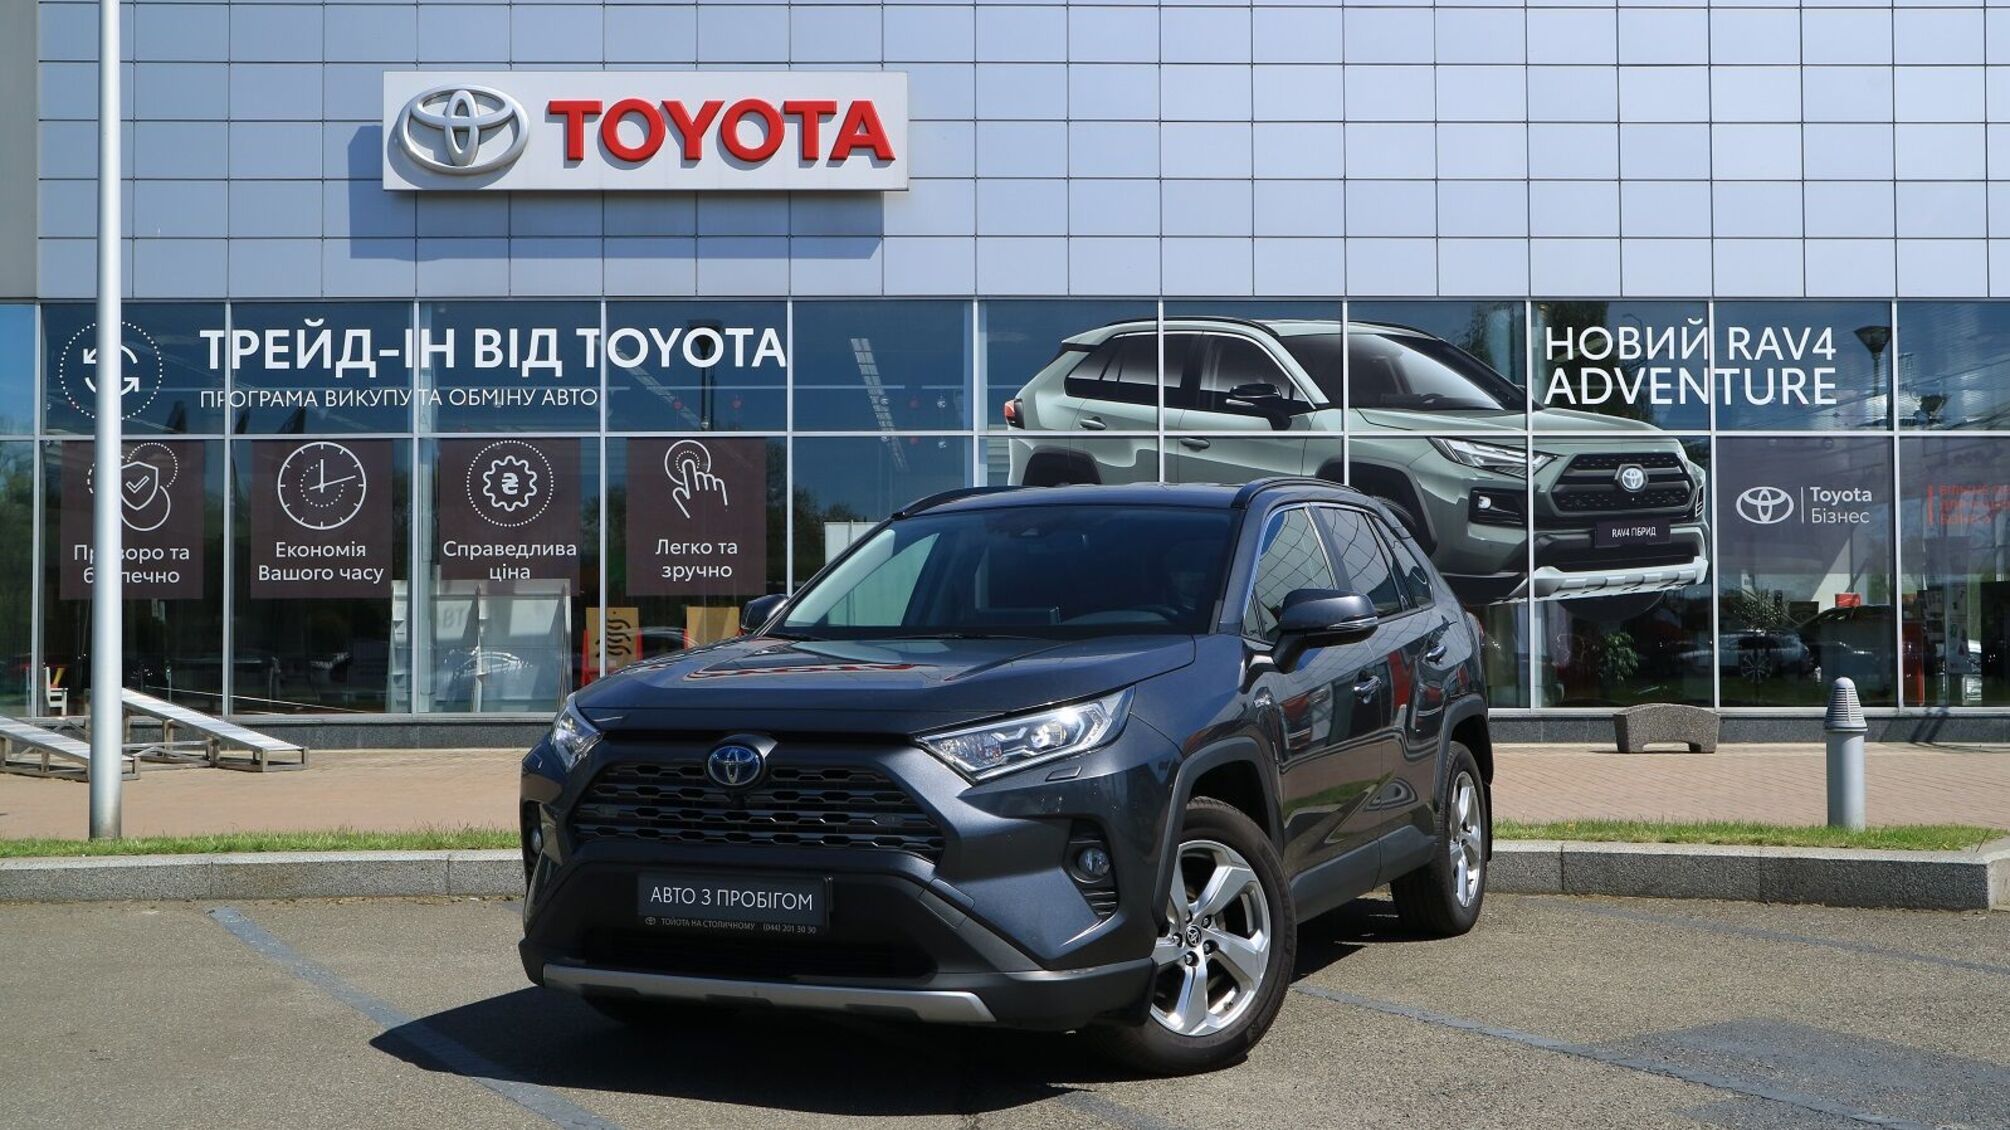 Журналисты усомнились в официальности дилера: есть ли в Чернигове официальный представитель бренда Toyota?